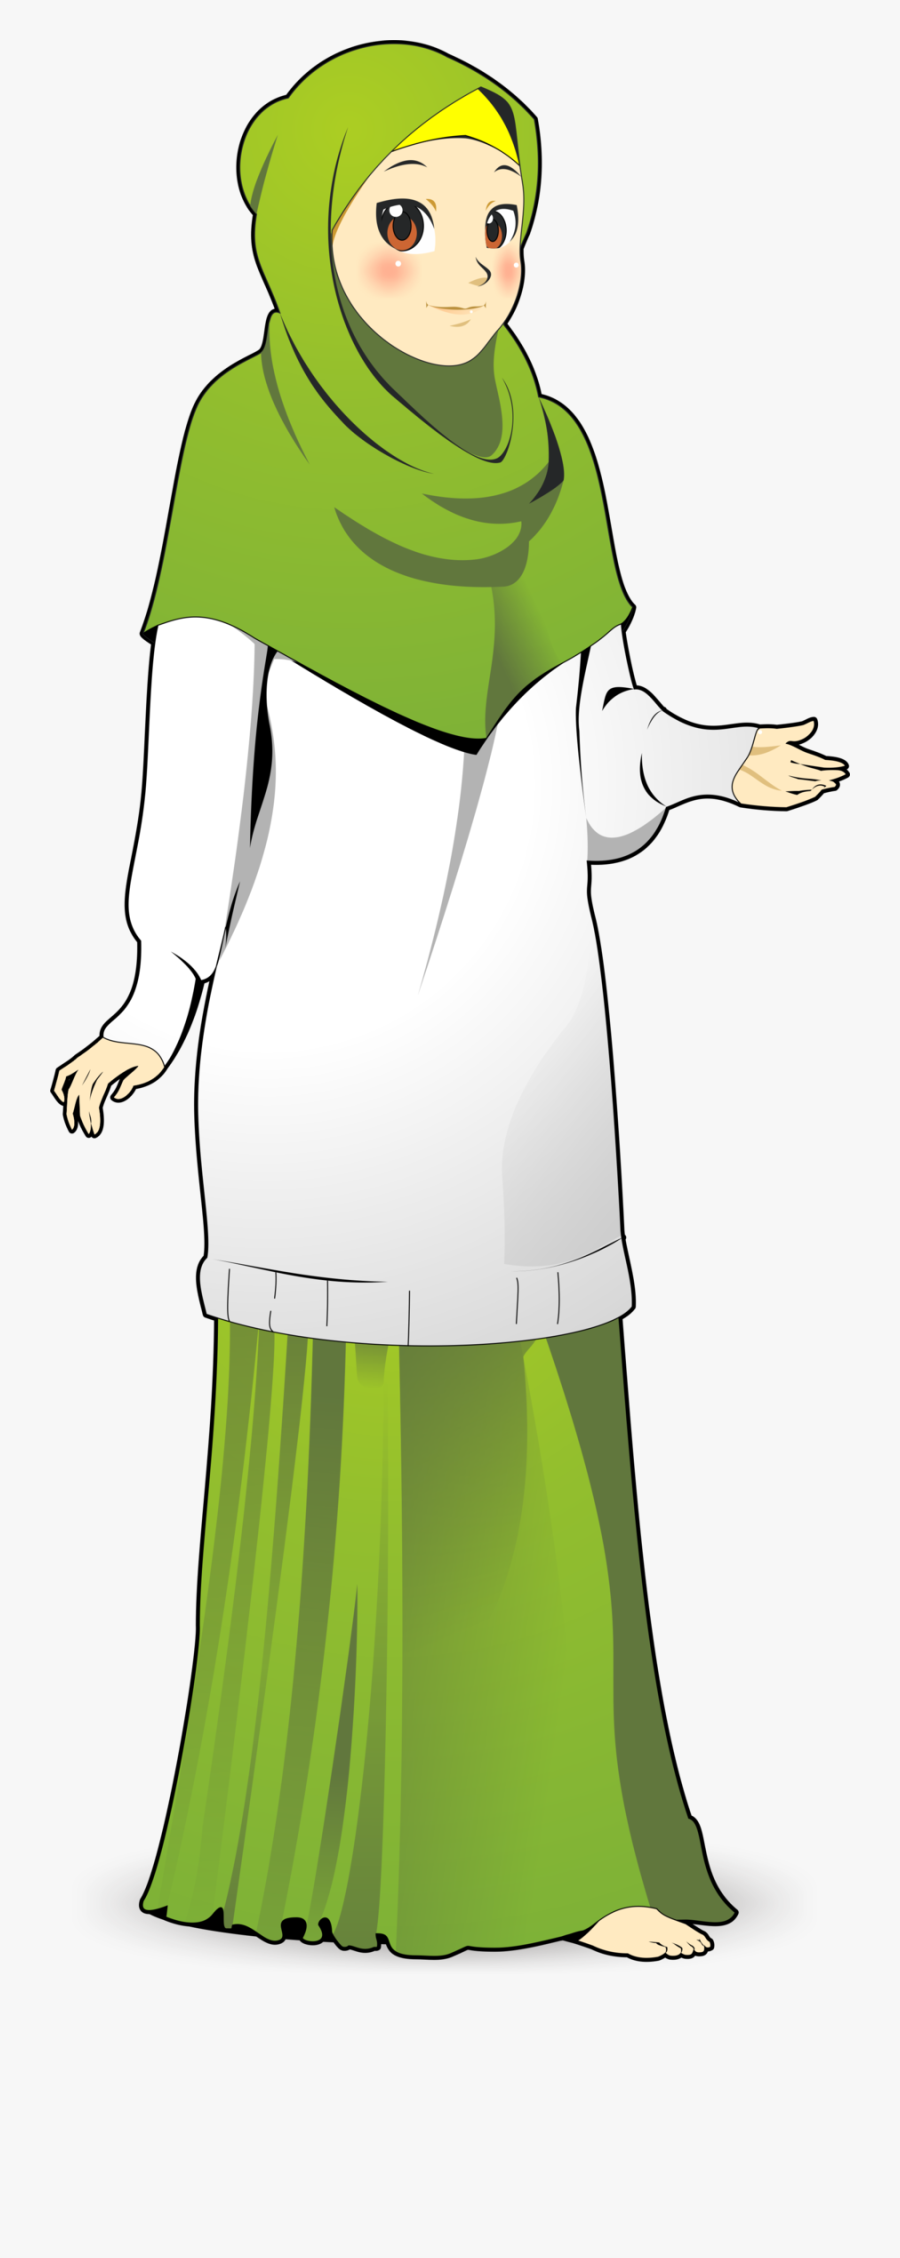 Baju Kurung Islam Cartoon Wedding - Muslimah Teacher Cartoon Png, Transparent Clipart